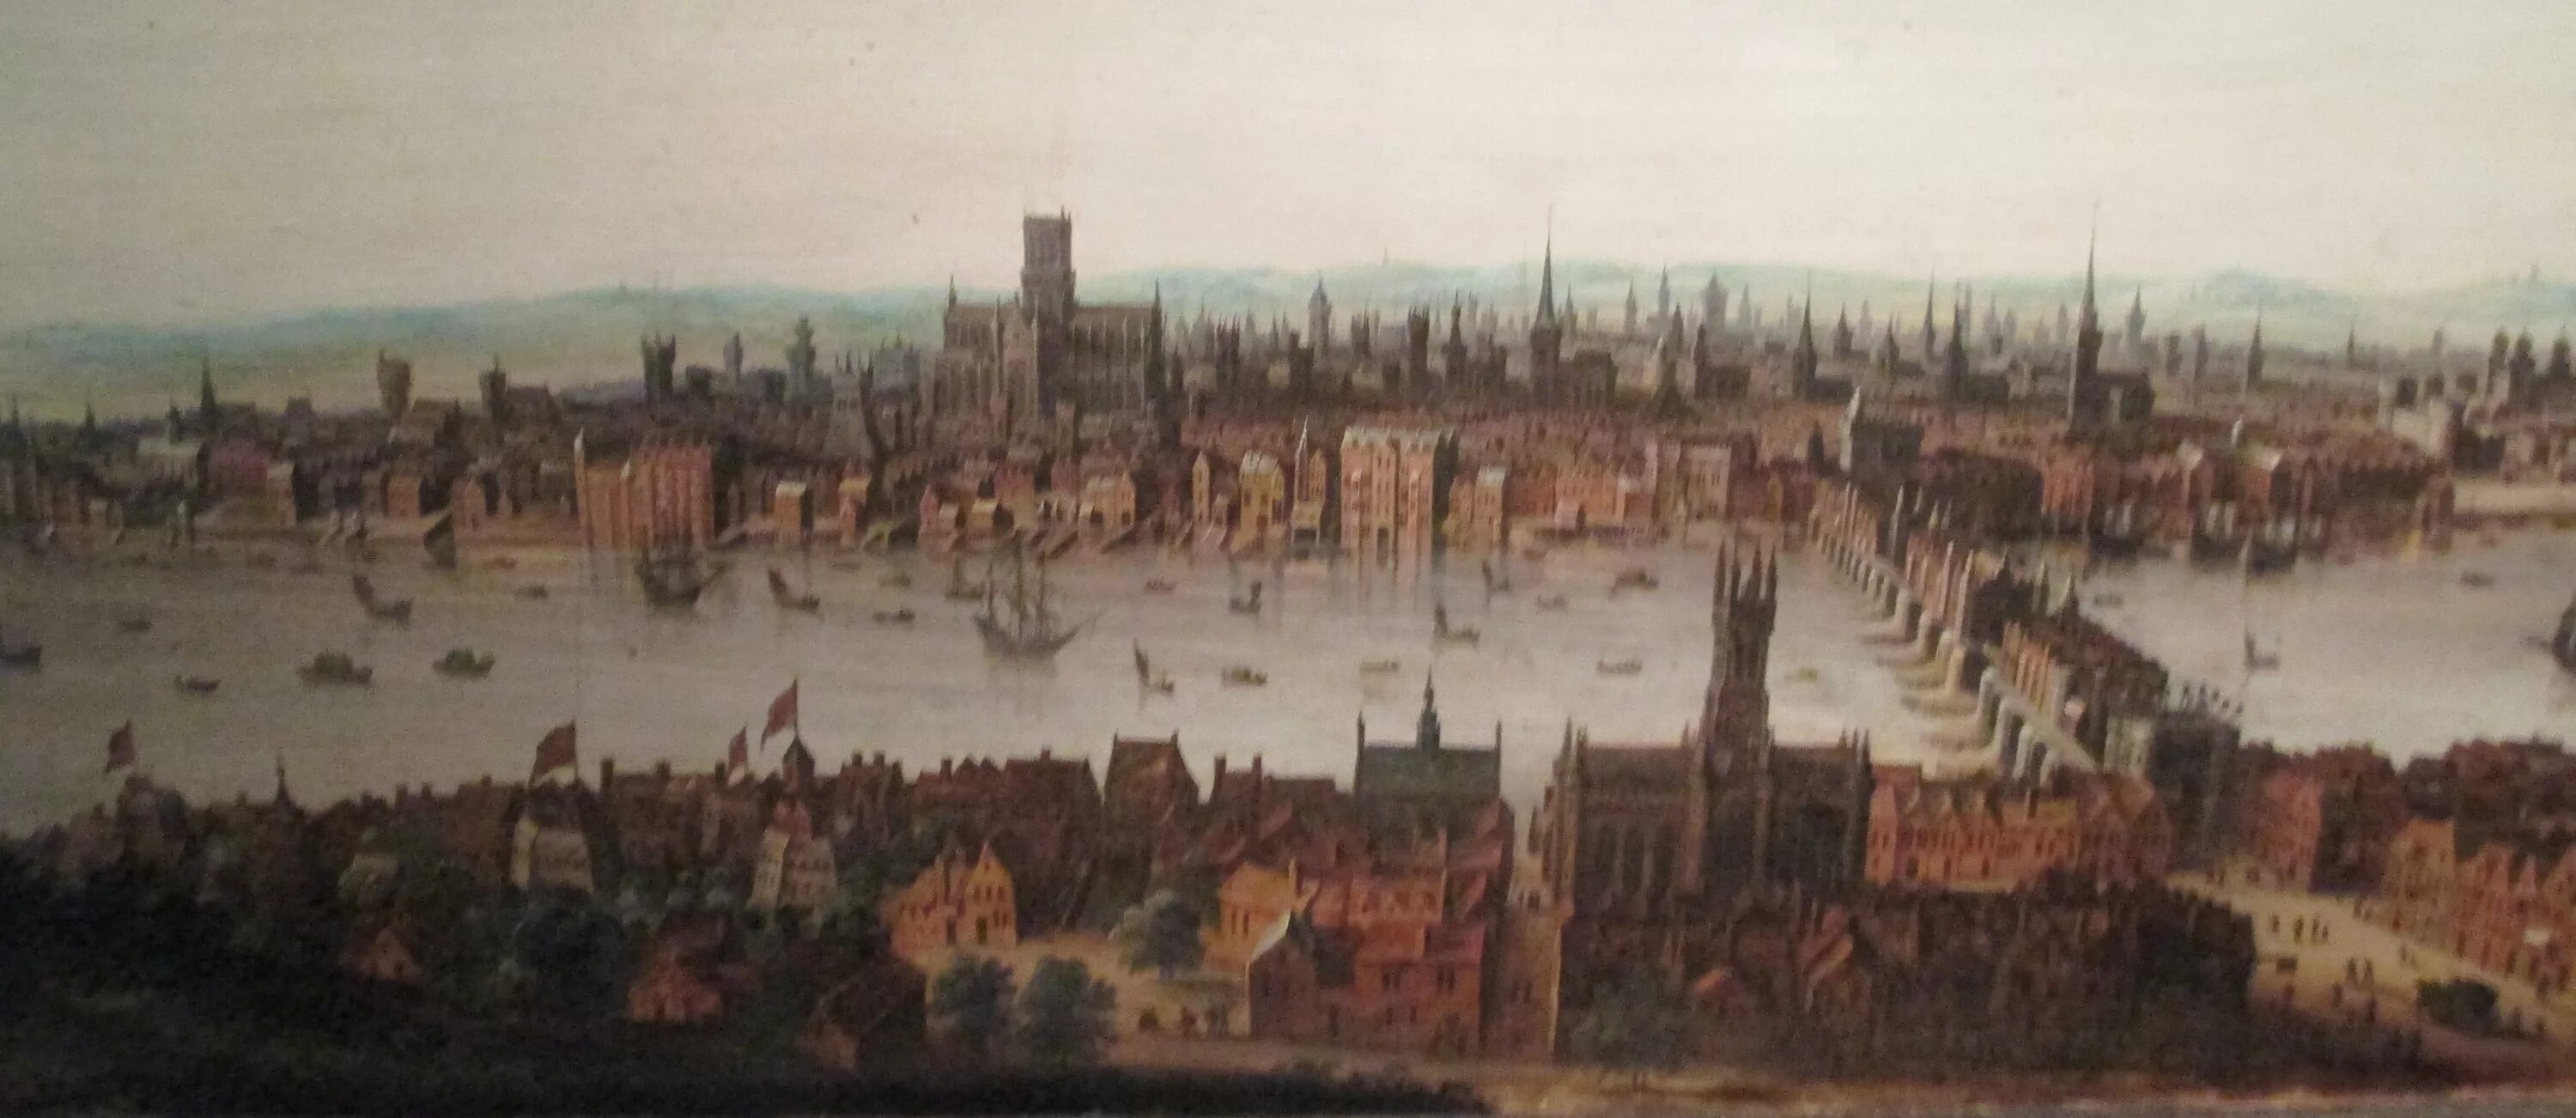 14 й век. Лондон 16 века. Лондон 11 века. Англия в 16 веке Лондон. Вестминстер Лондон 17 век.